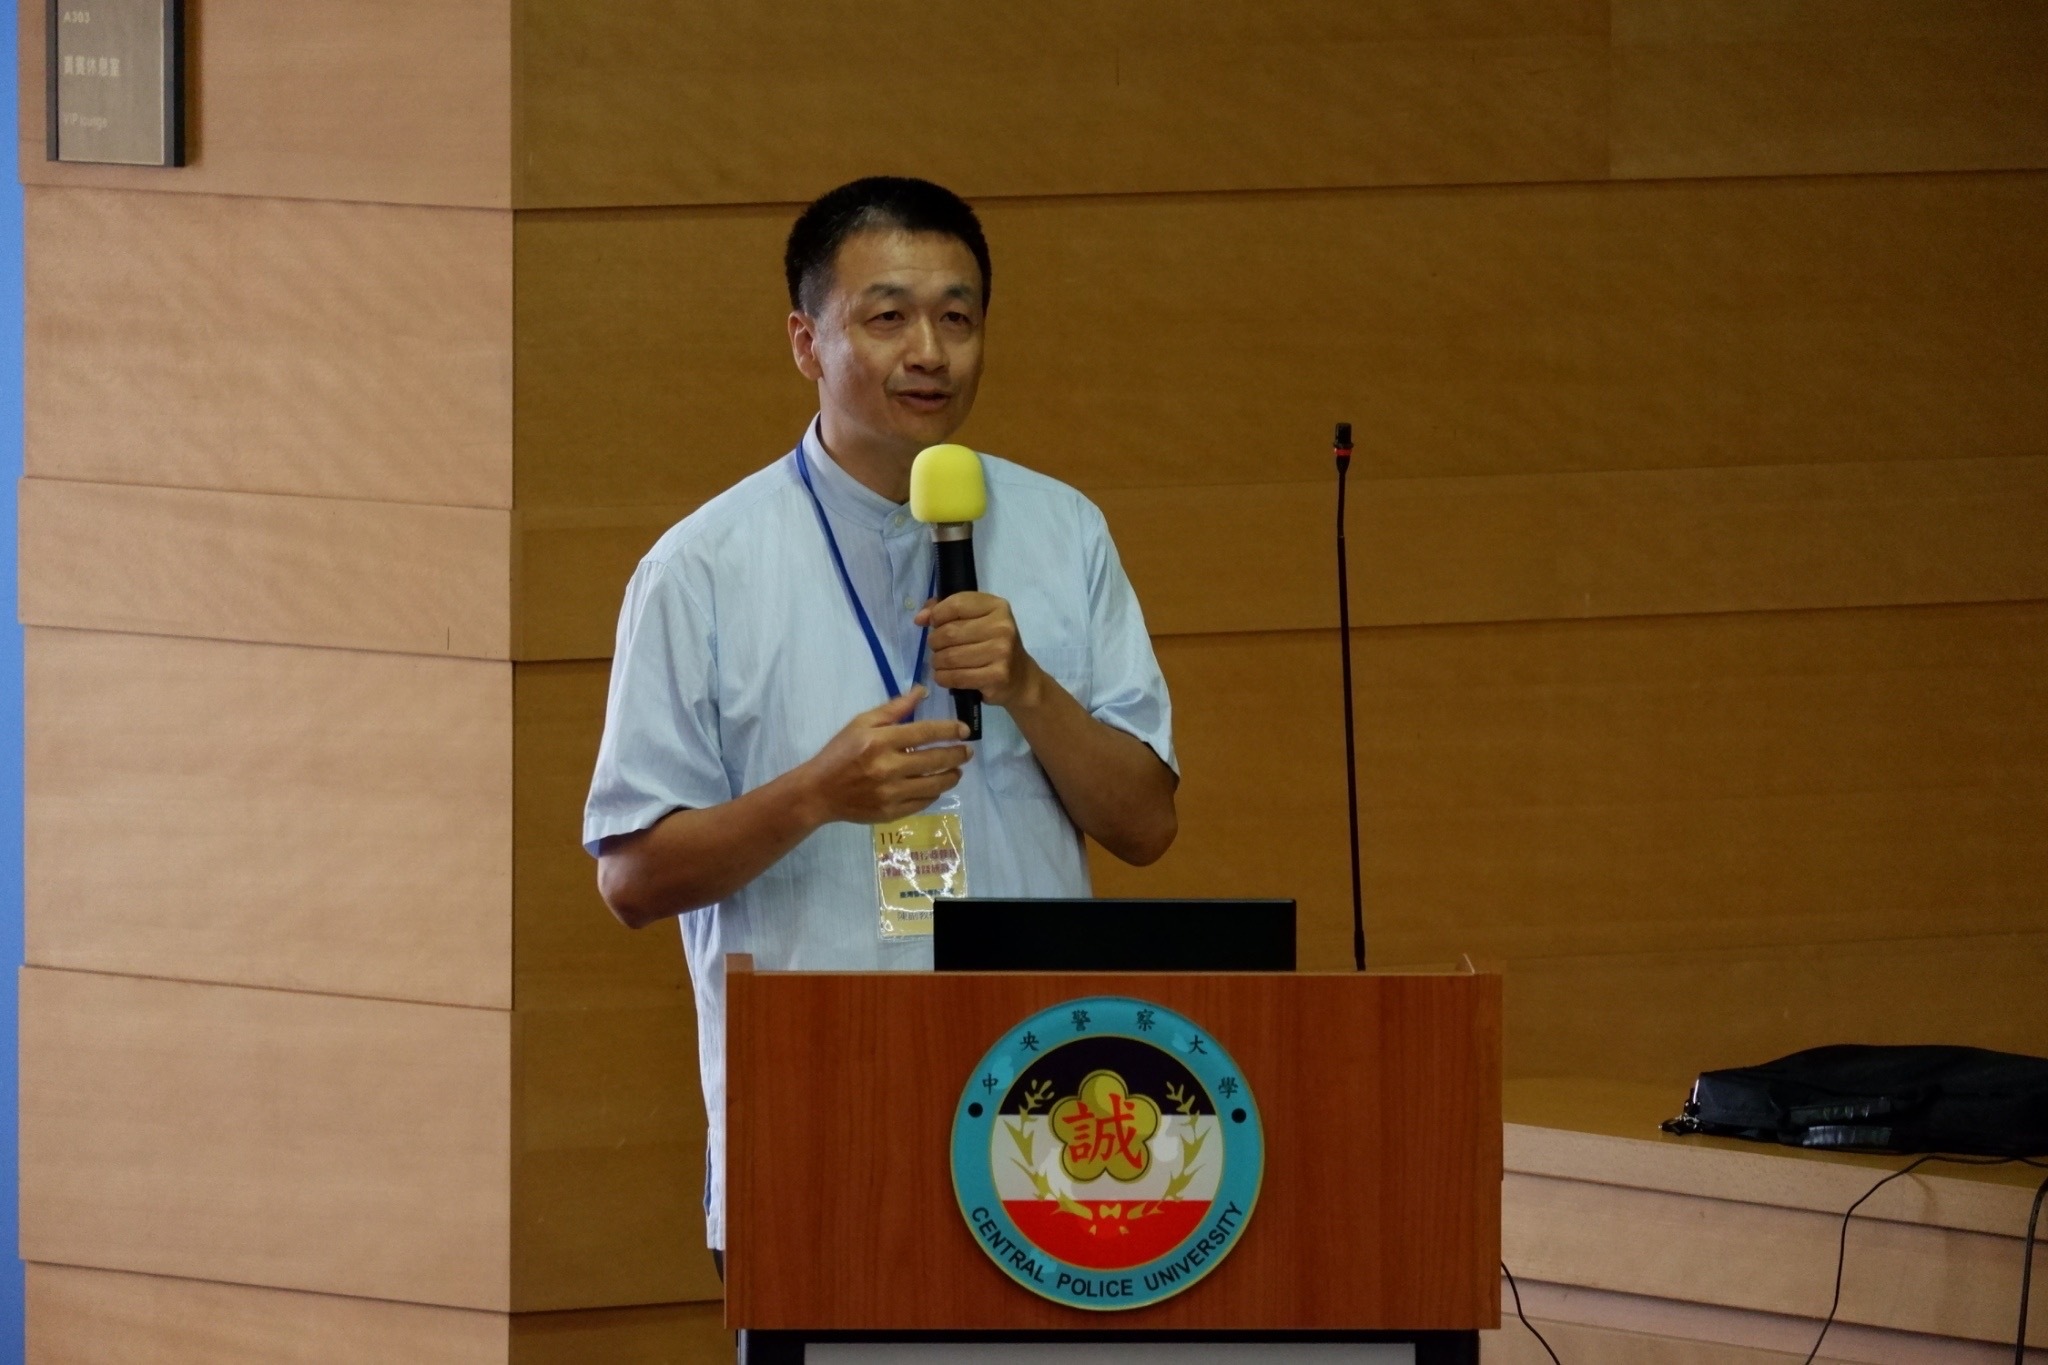 第二場次研討會主講人陳副教授俊宏發表「警察職權行使法二十週年回顧與展望」